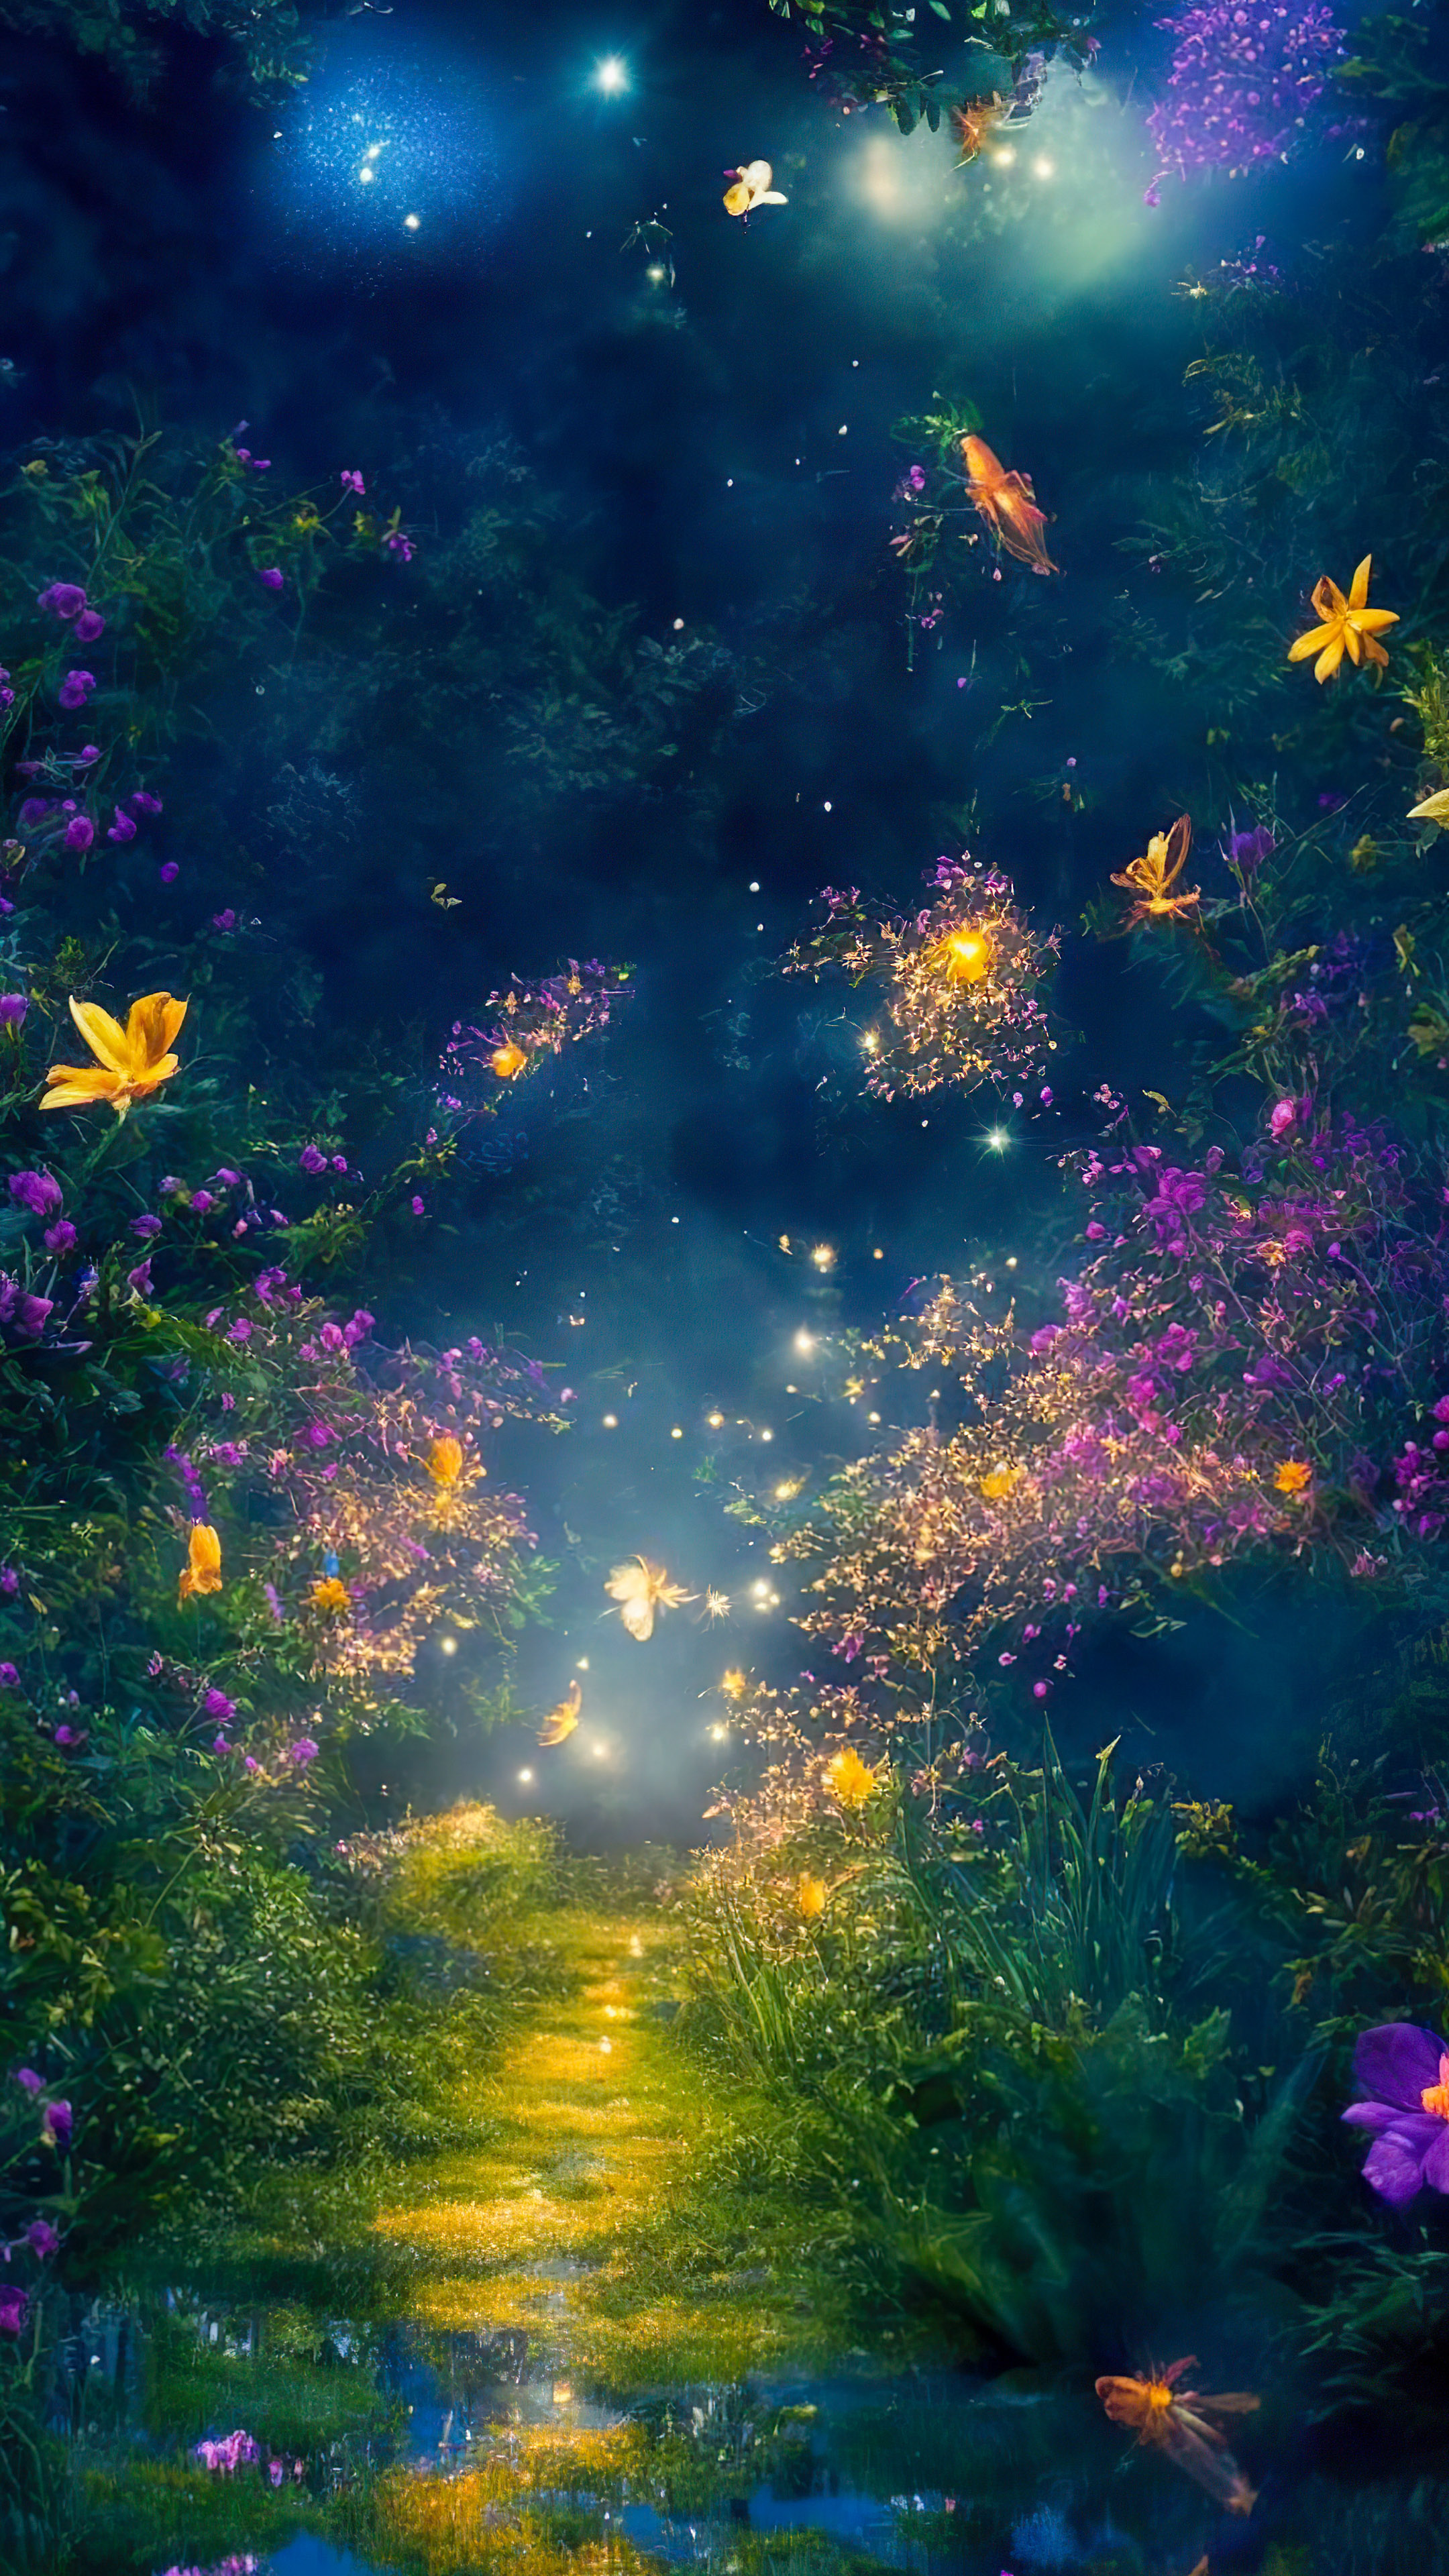 Téléchargez la fantaisie de notre fond d'écran de paysage fantastique, illustrant un jardin magique et capricieux la nuit, où les lucioles dansent autour de fleurs vibrantes et luminescentes.